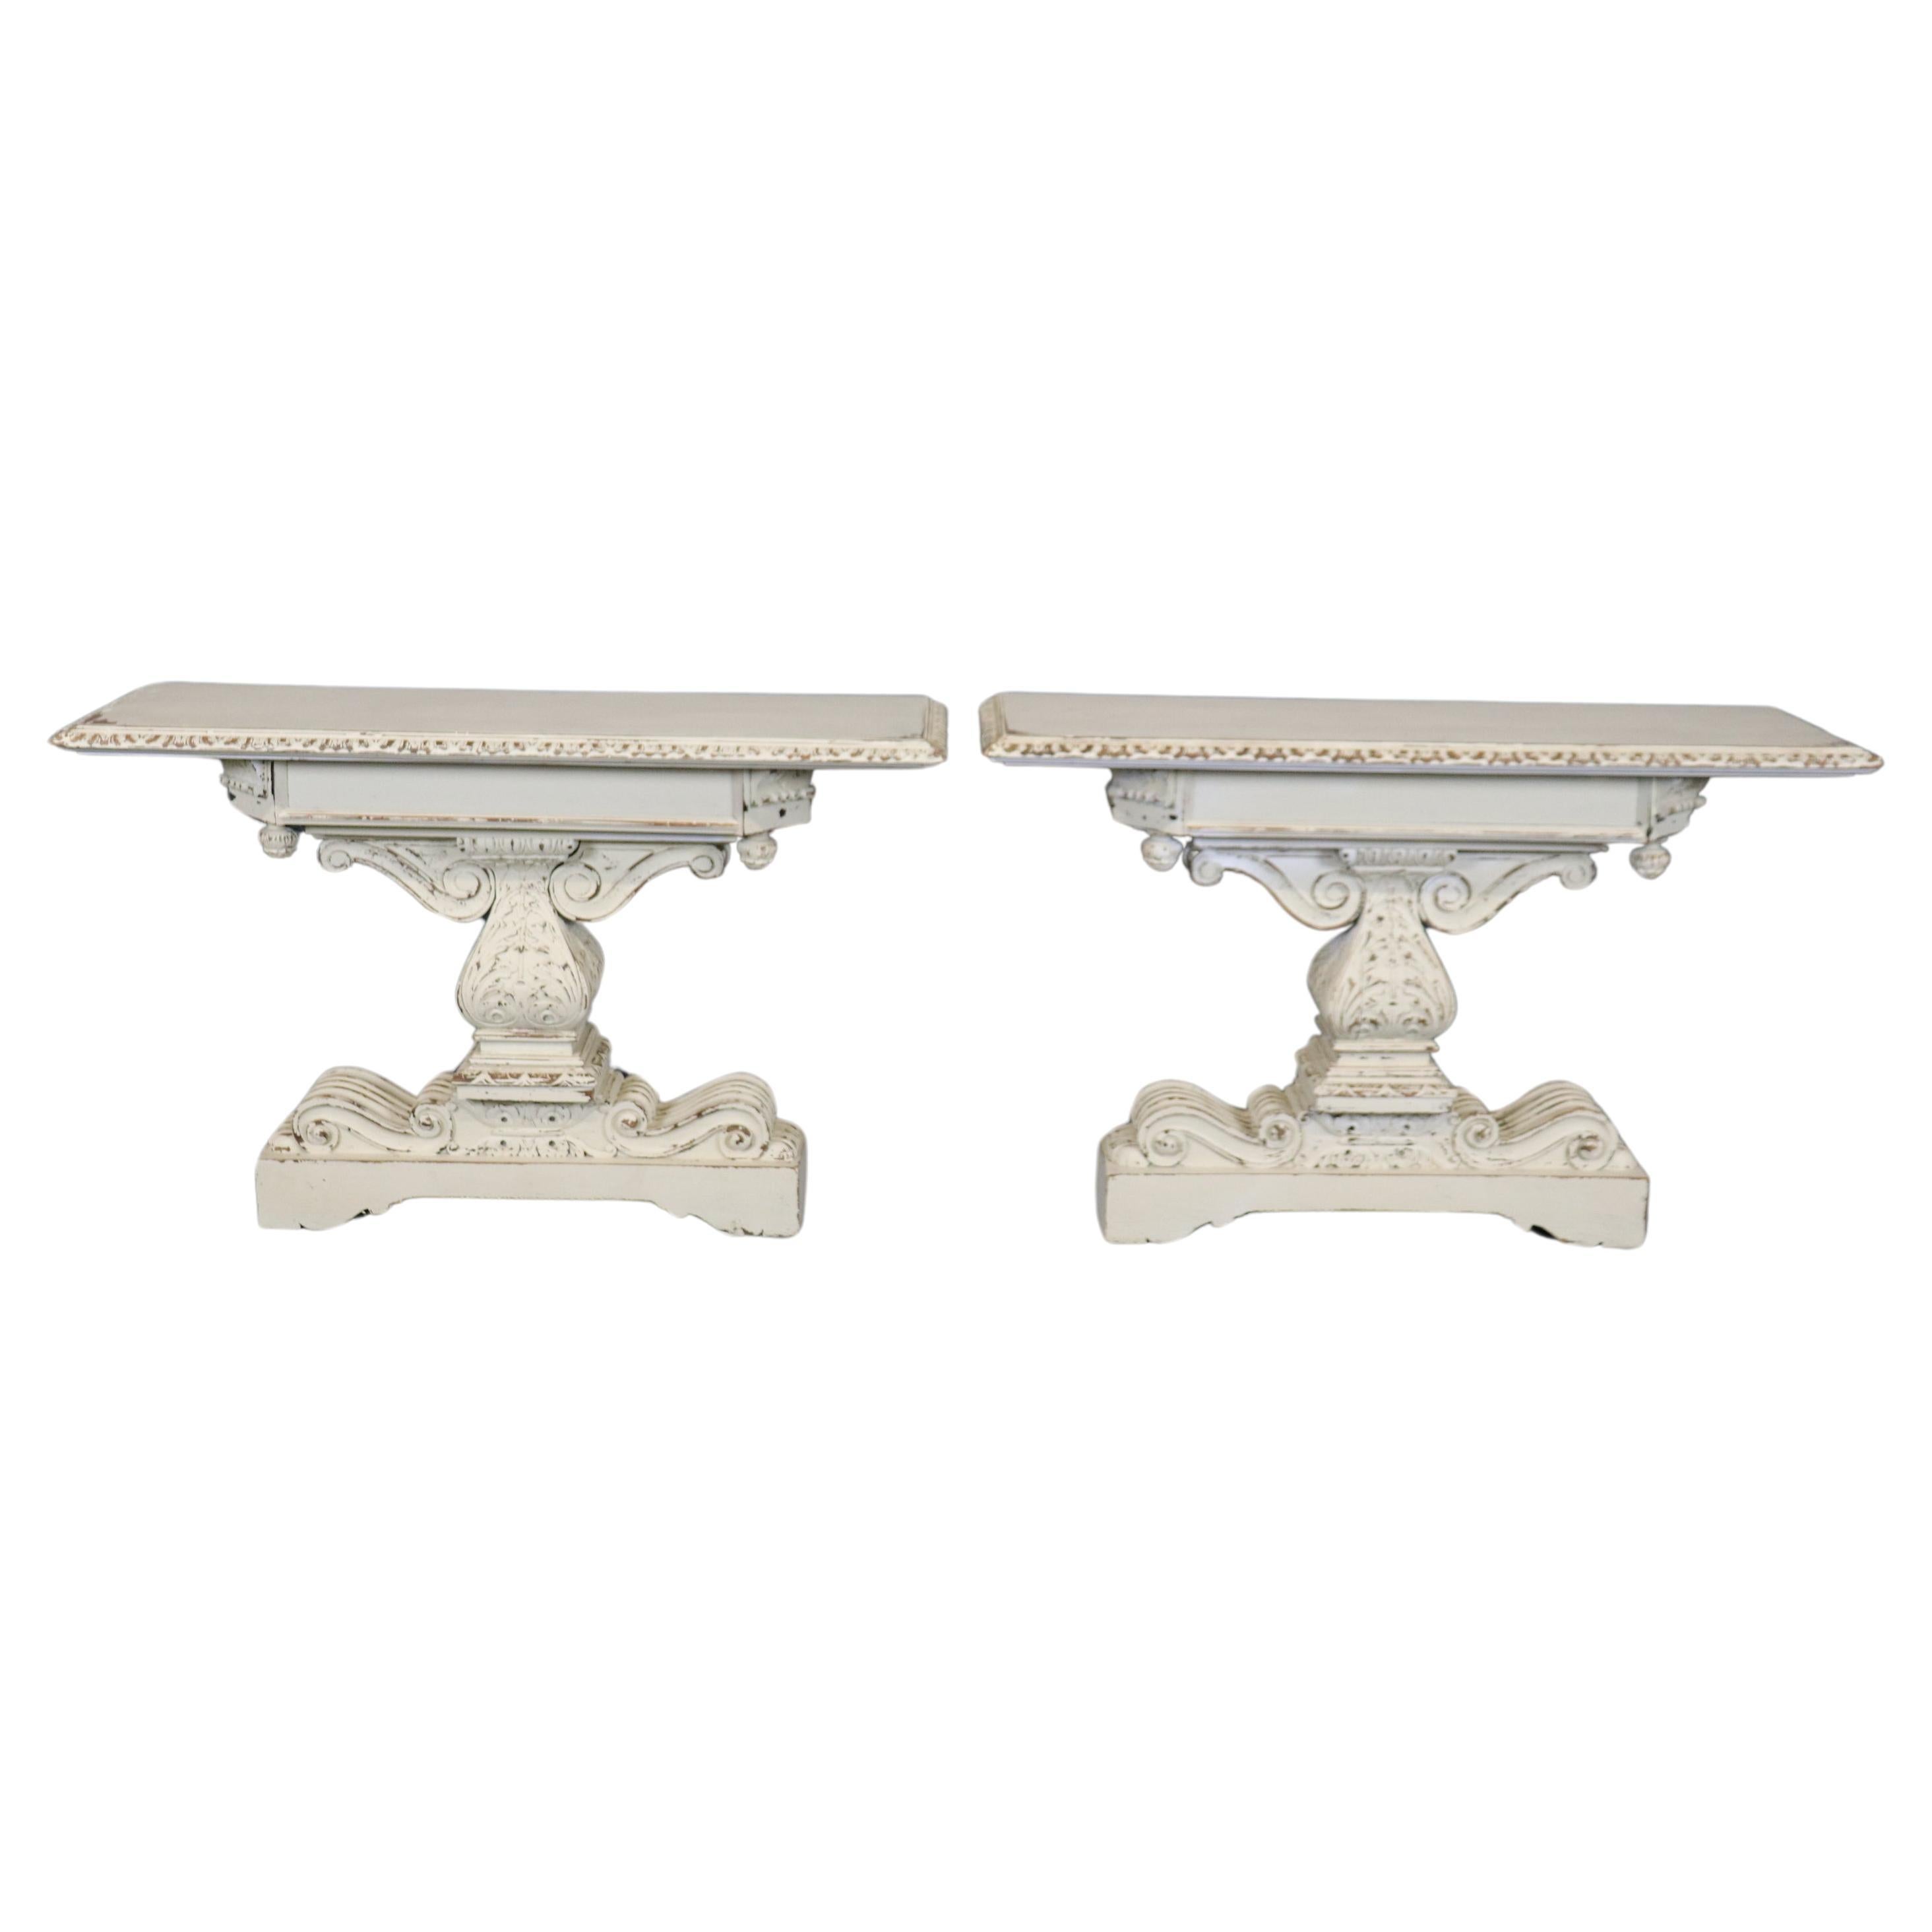  Paire de tables consoles sculptées, peintes en blanc et vieillies, de style Jacobean 